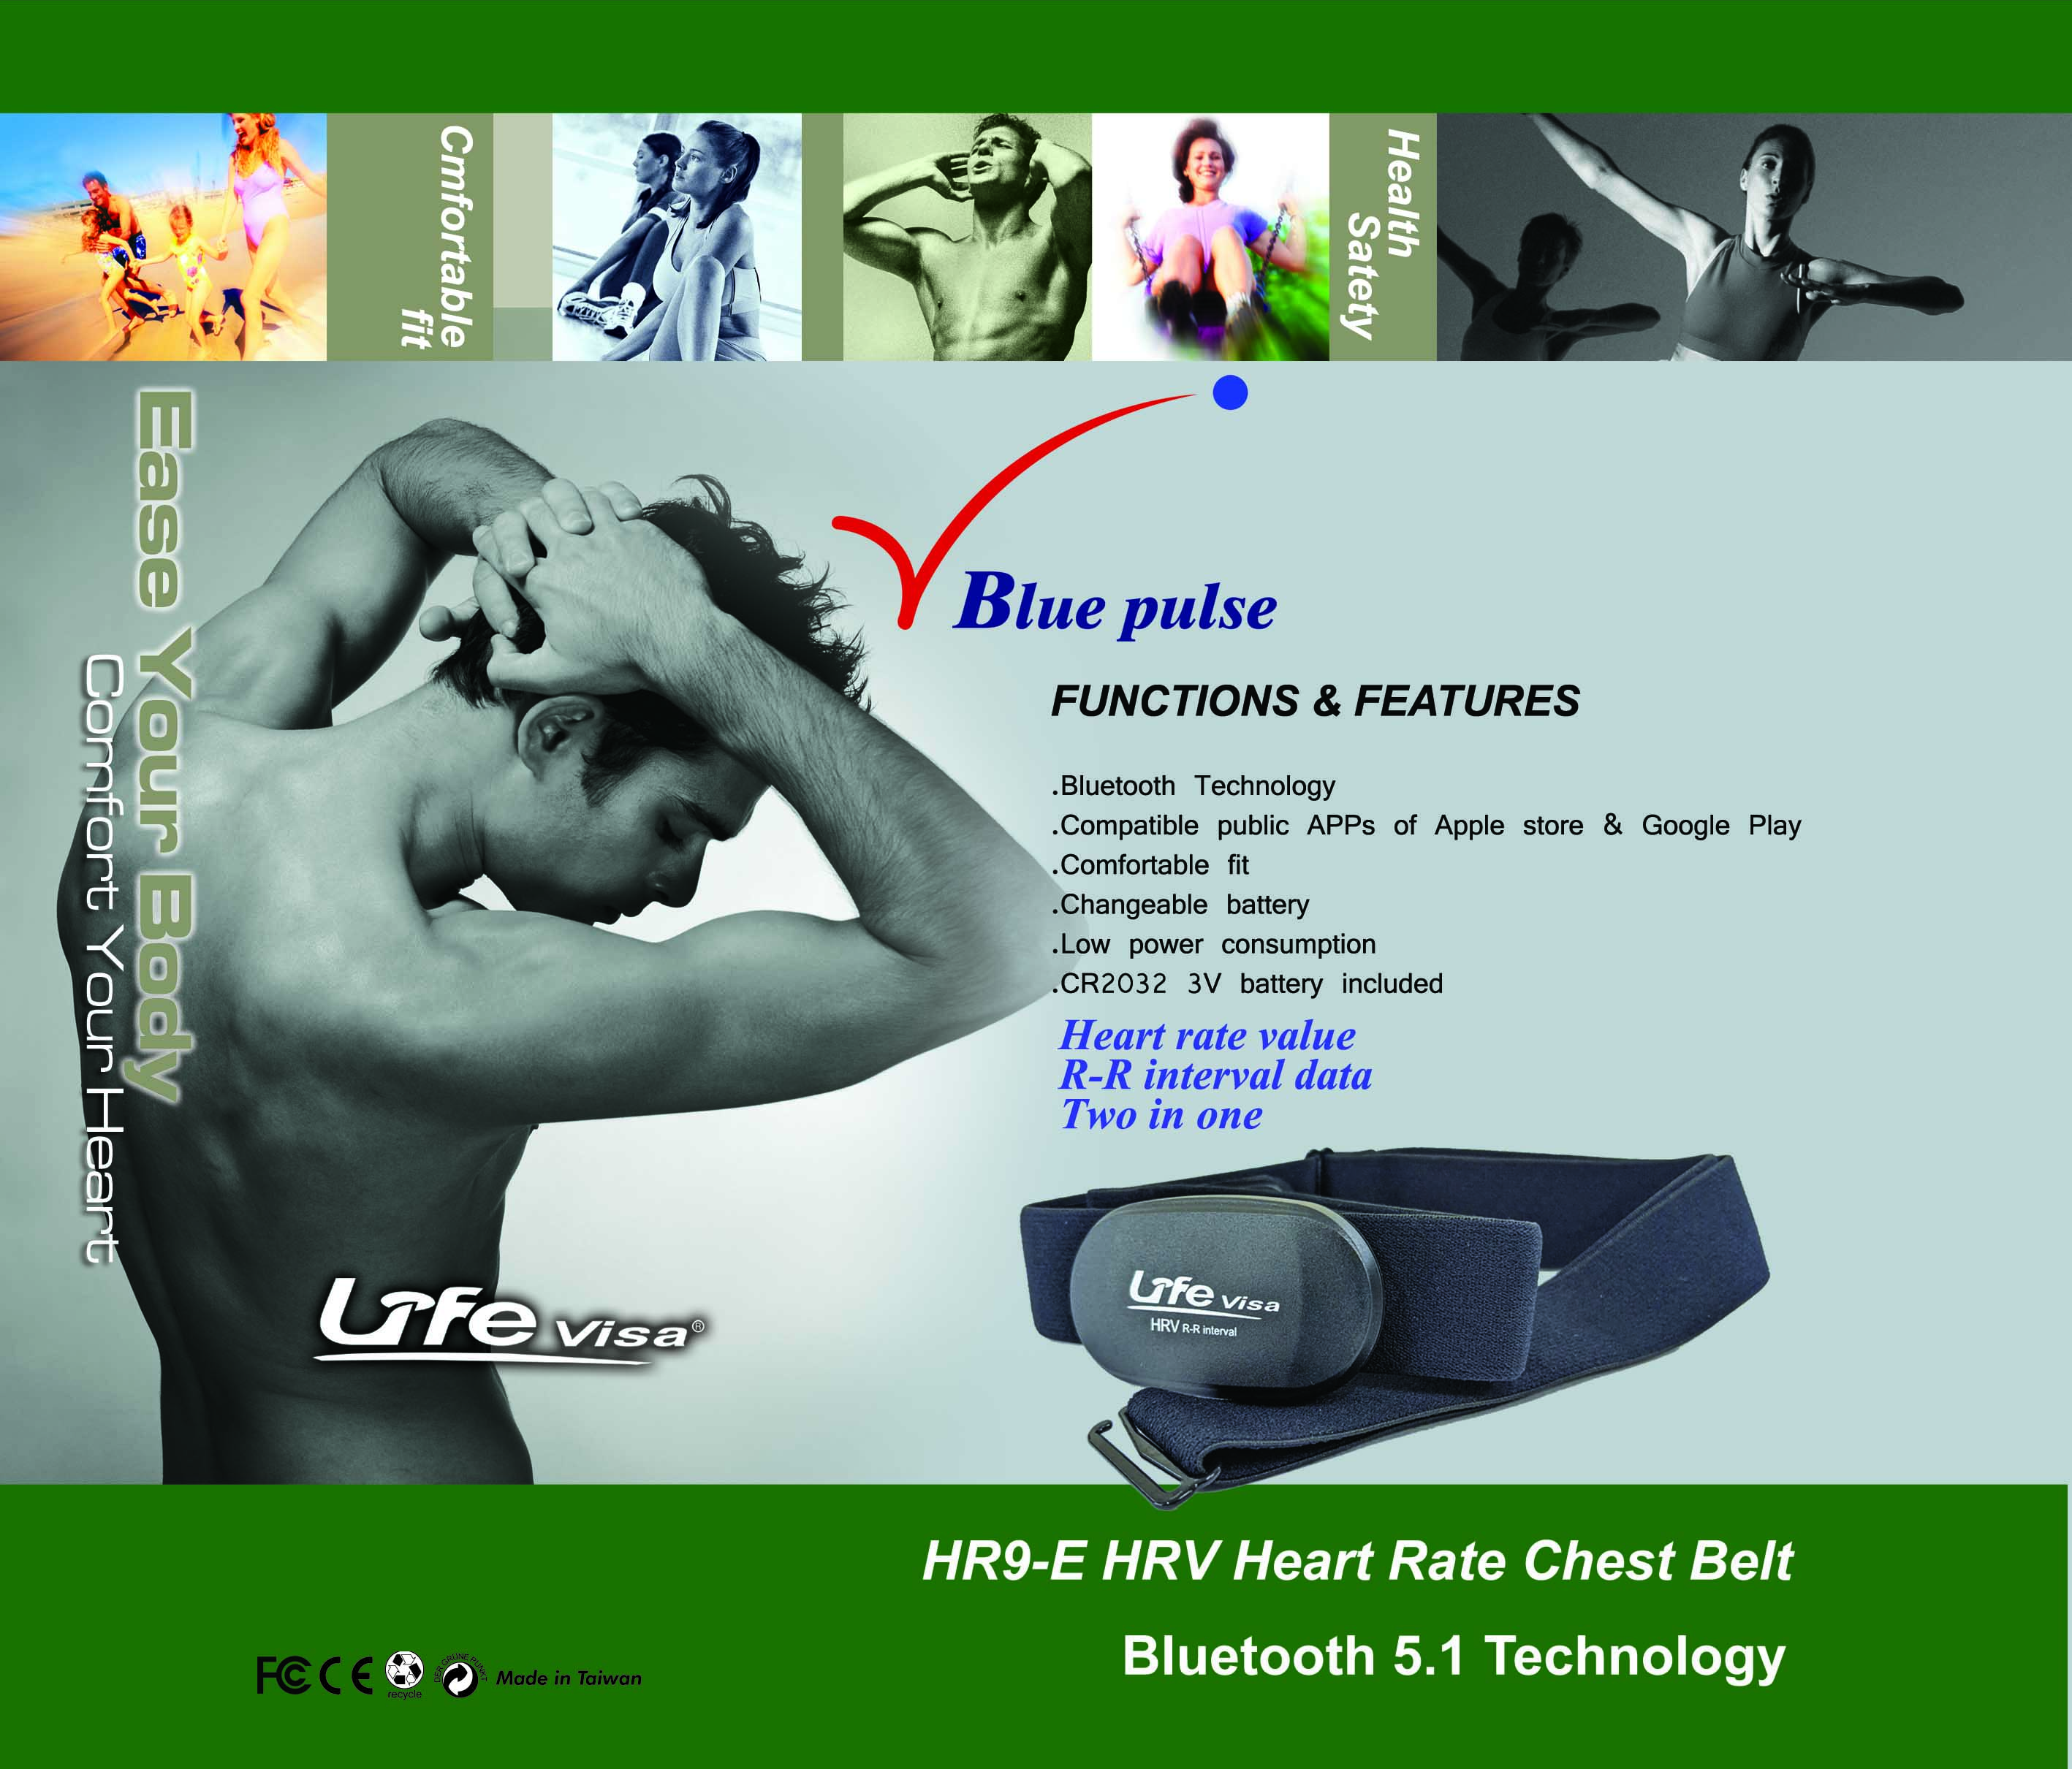 心跳帶，心率帶,藍芽心率帶,Lifevisa,lifevisa,Taiwan Biotronic,One-piece elastic heart rate chest strap